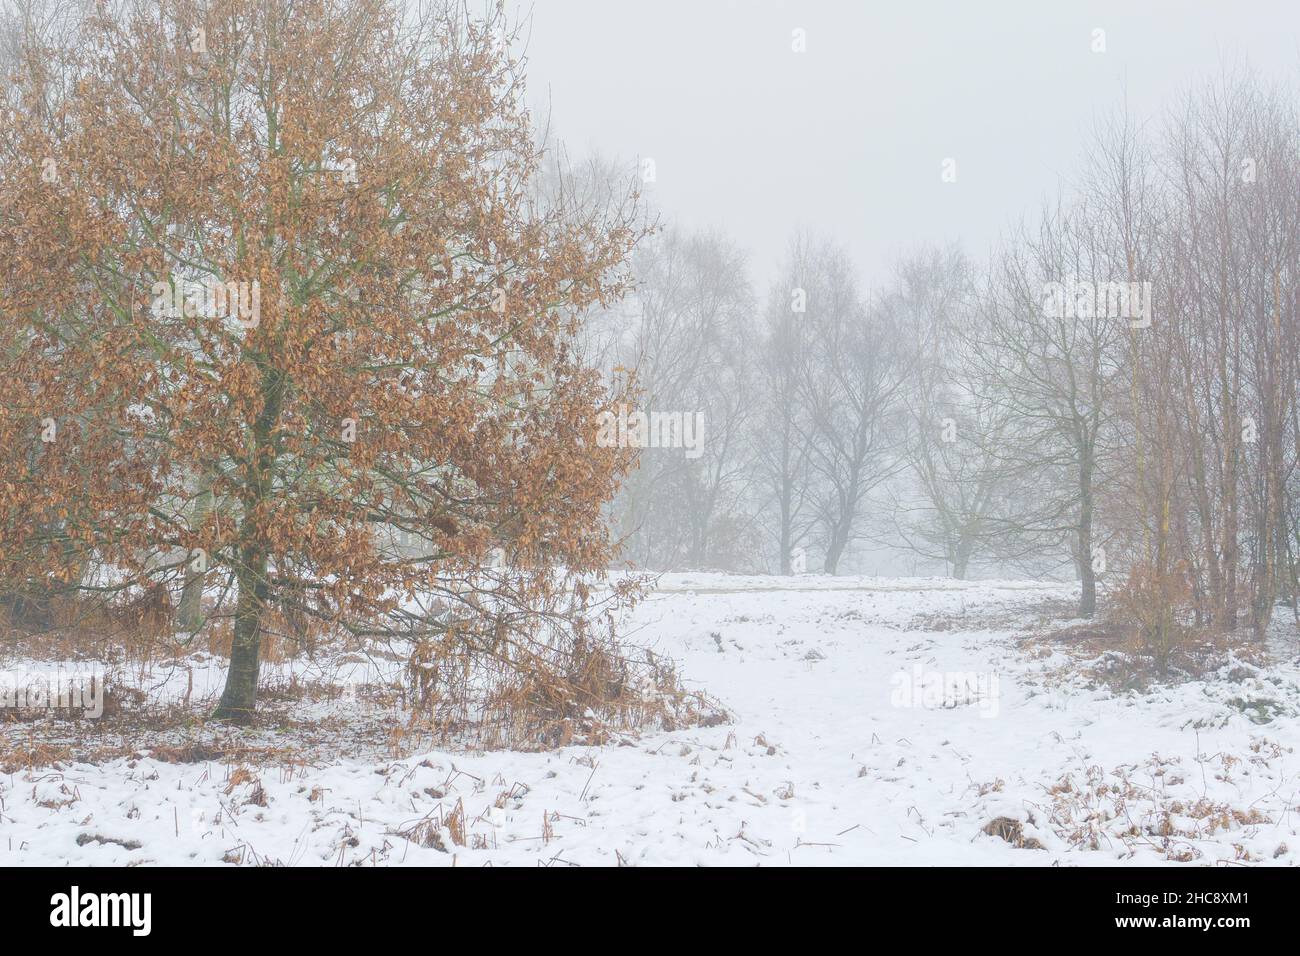 Snow Covered Otley Chevin Forest Park, West Yorkshire, il giorno di Santo Stefano 2021. Il terreno è denso di neve e una nebbia fredda di vino riempie l'aria. Nessuna gente. Foto Stock